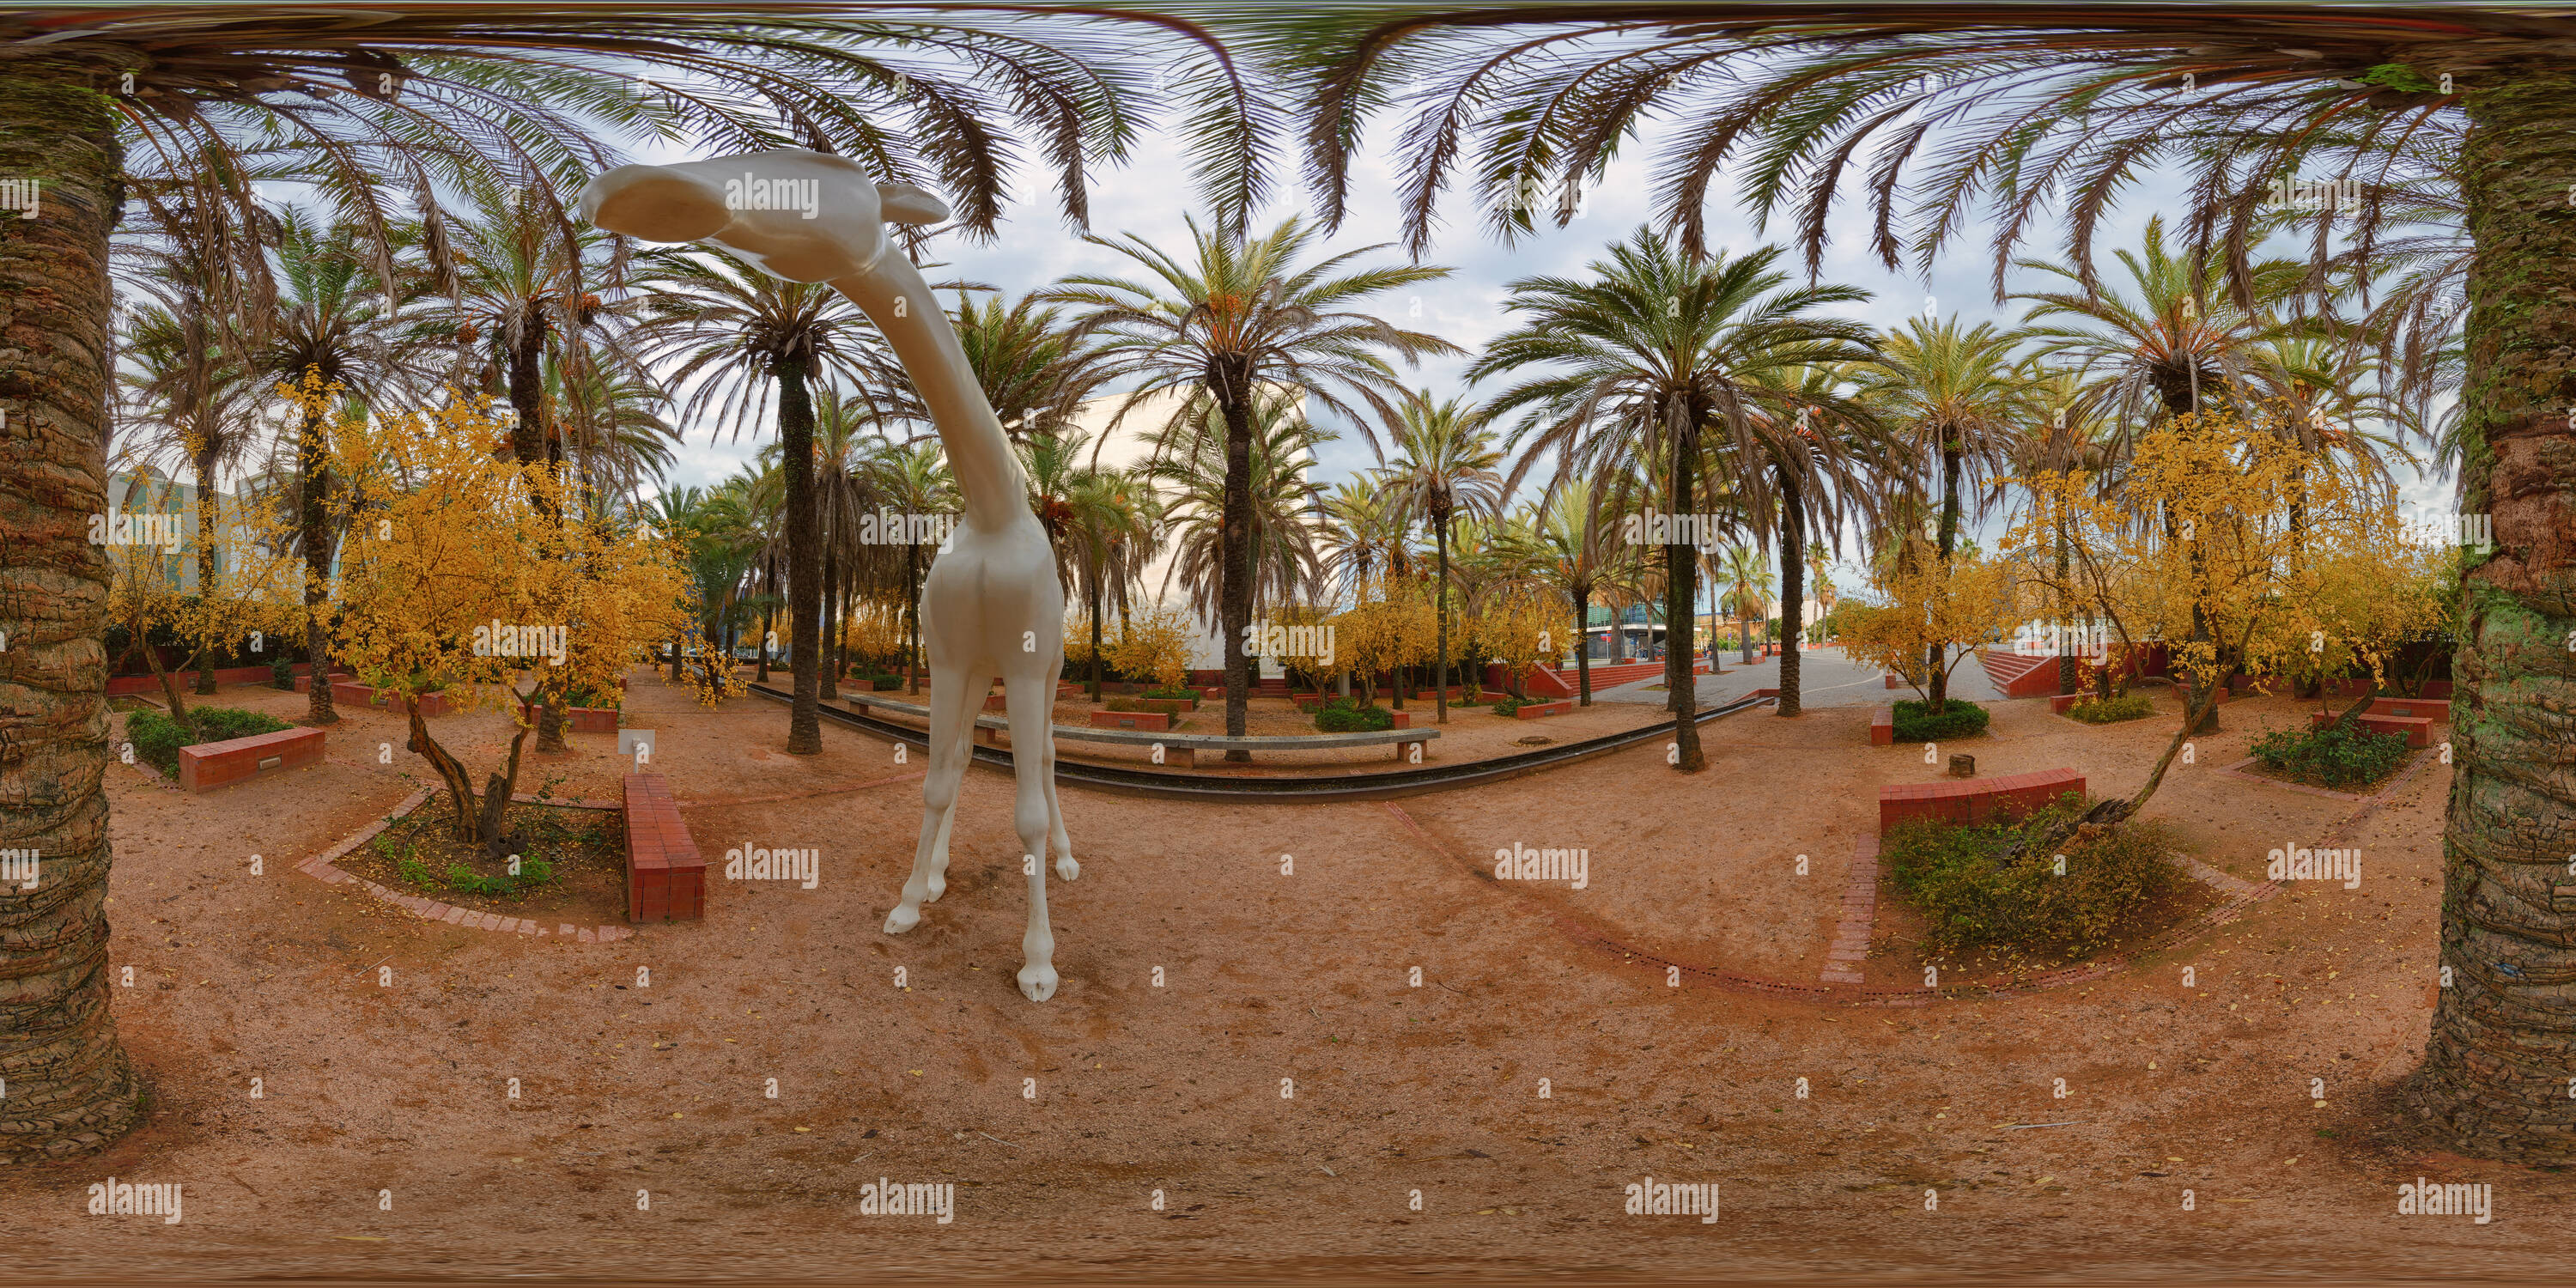 Vue panoramique à 360° de Girafe en métal dans un jardin de palmiers, Lisbonne